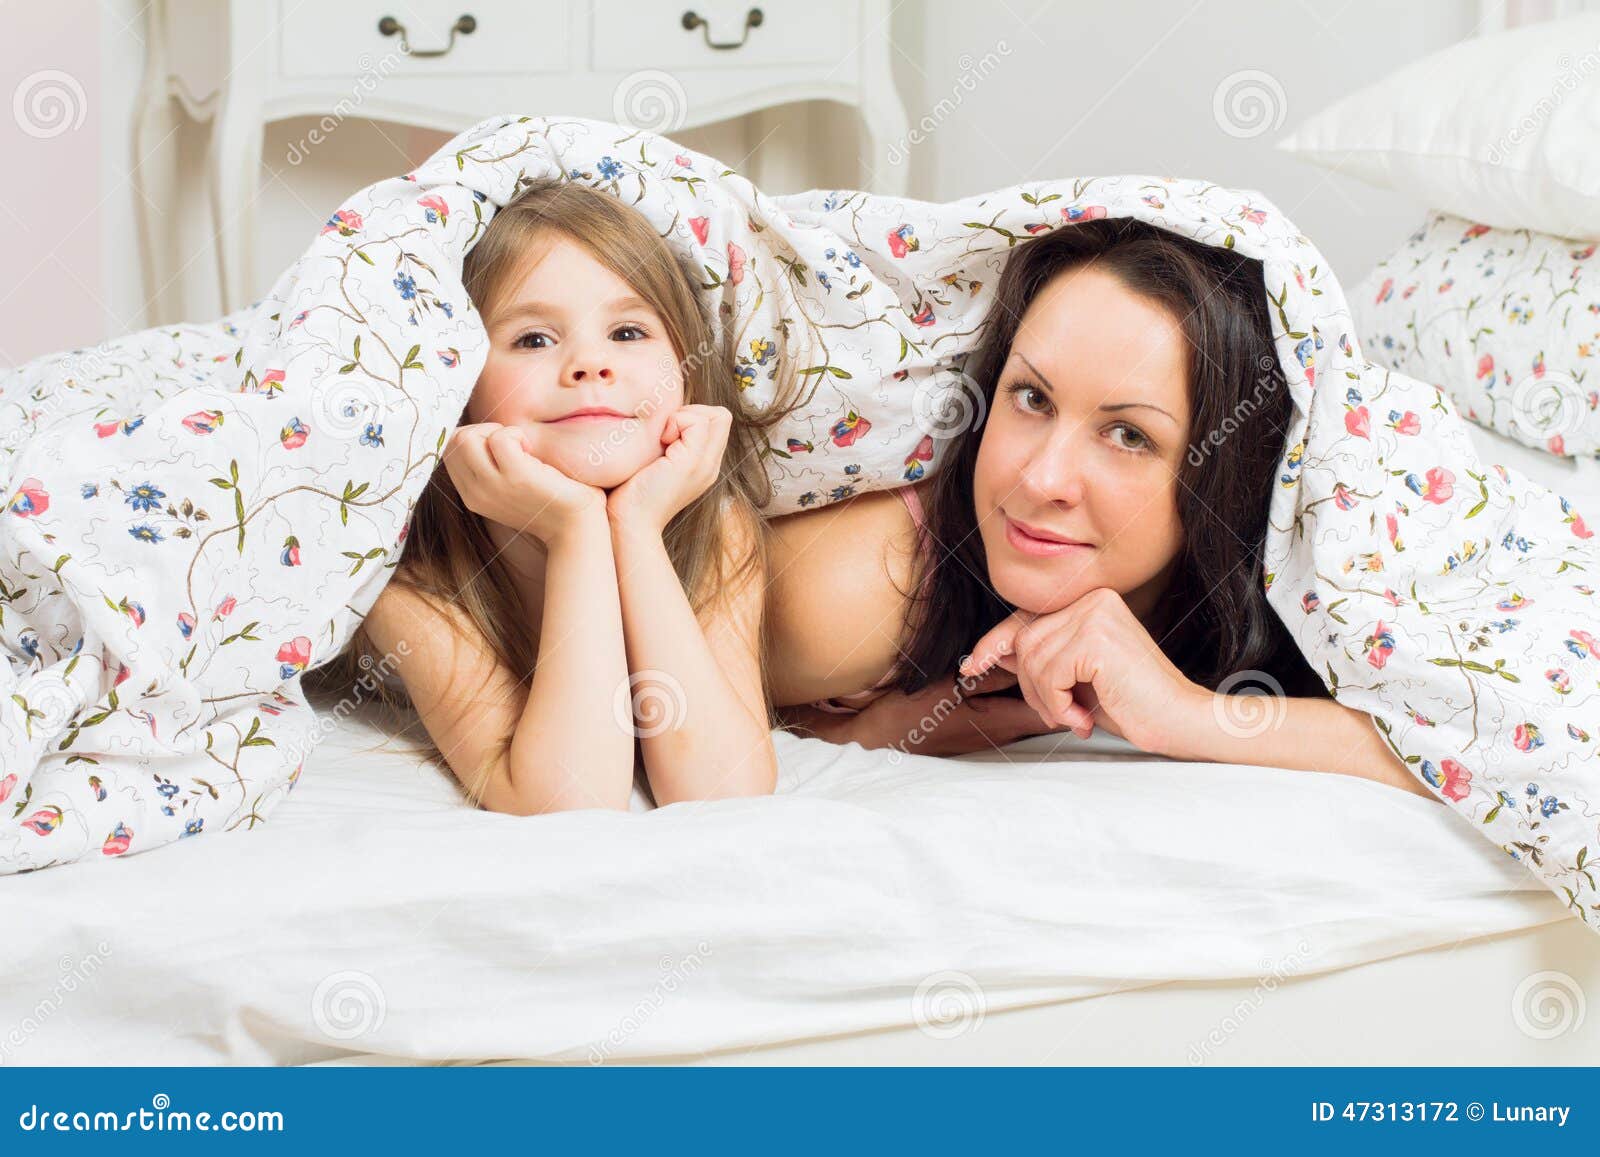 С ее мамой в постели. Мама с дочкой на кровати. Мамас дочкой накрлвати. Фотосессия с дочкой на кровати. Фотосессия мама и дочь в кровати.